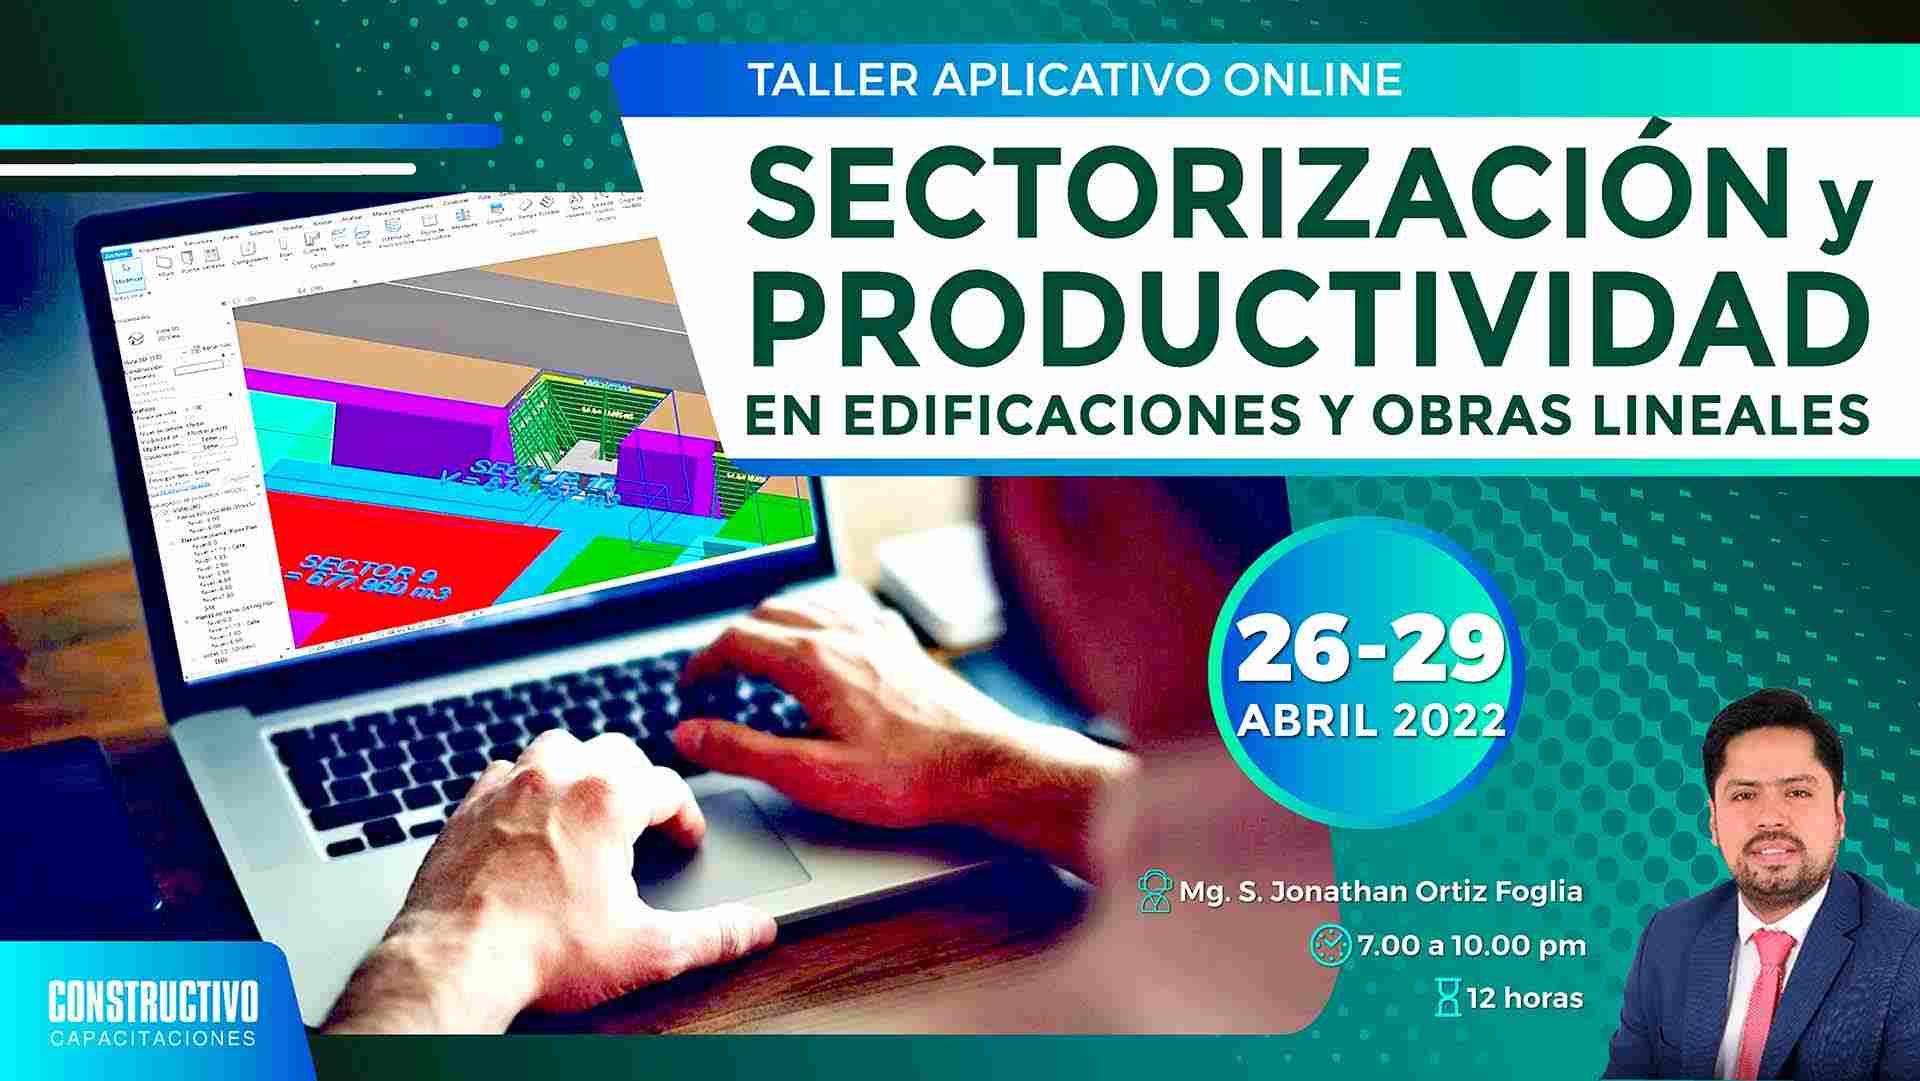 Taller aplicativo online: Sectorización y productividad en edificaciones y obras lineales